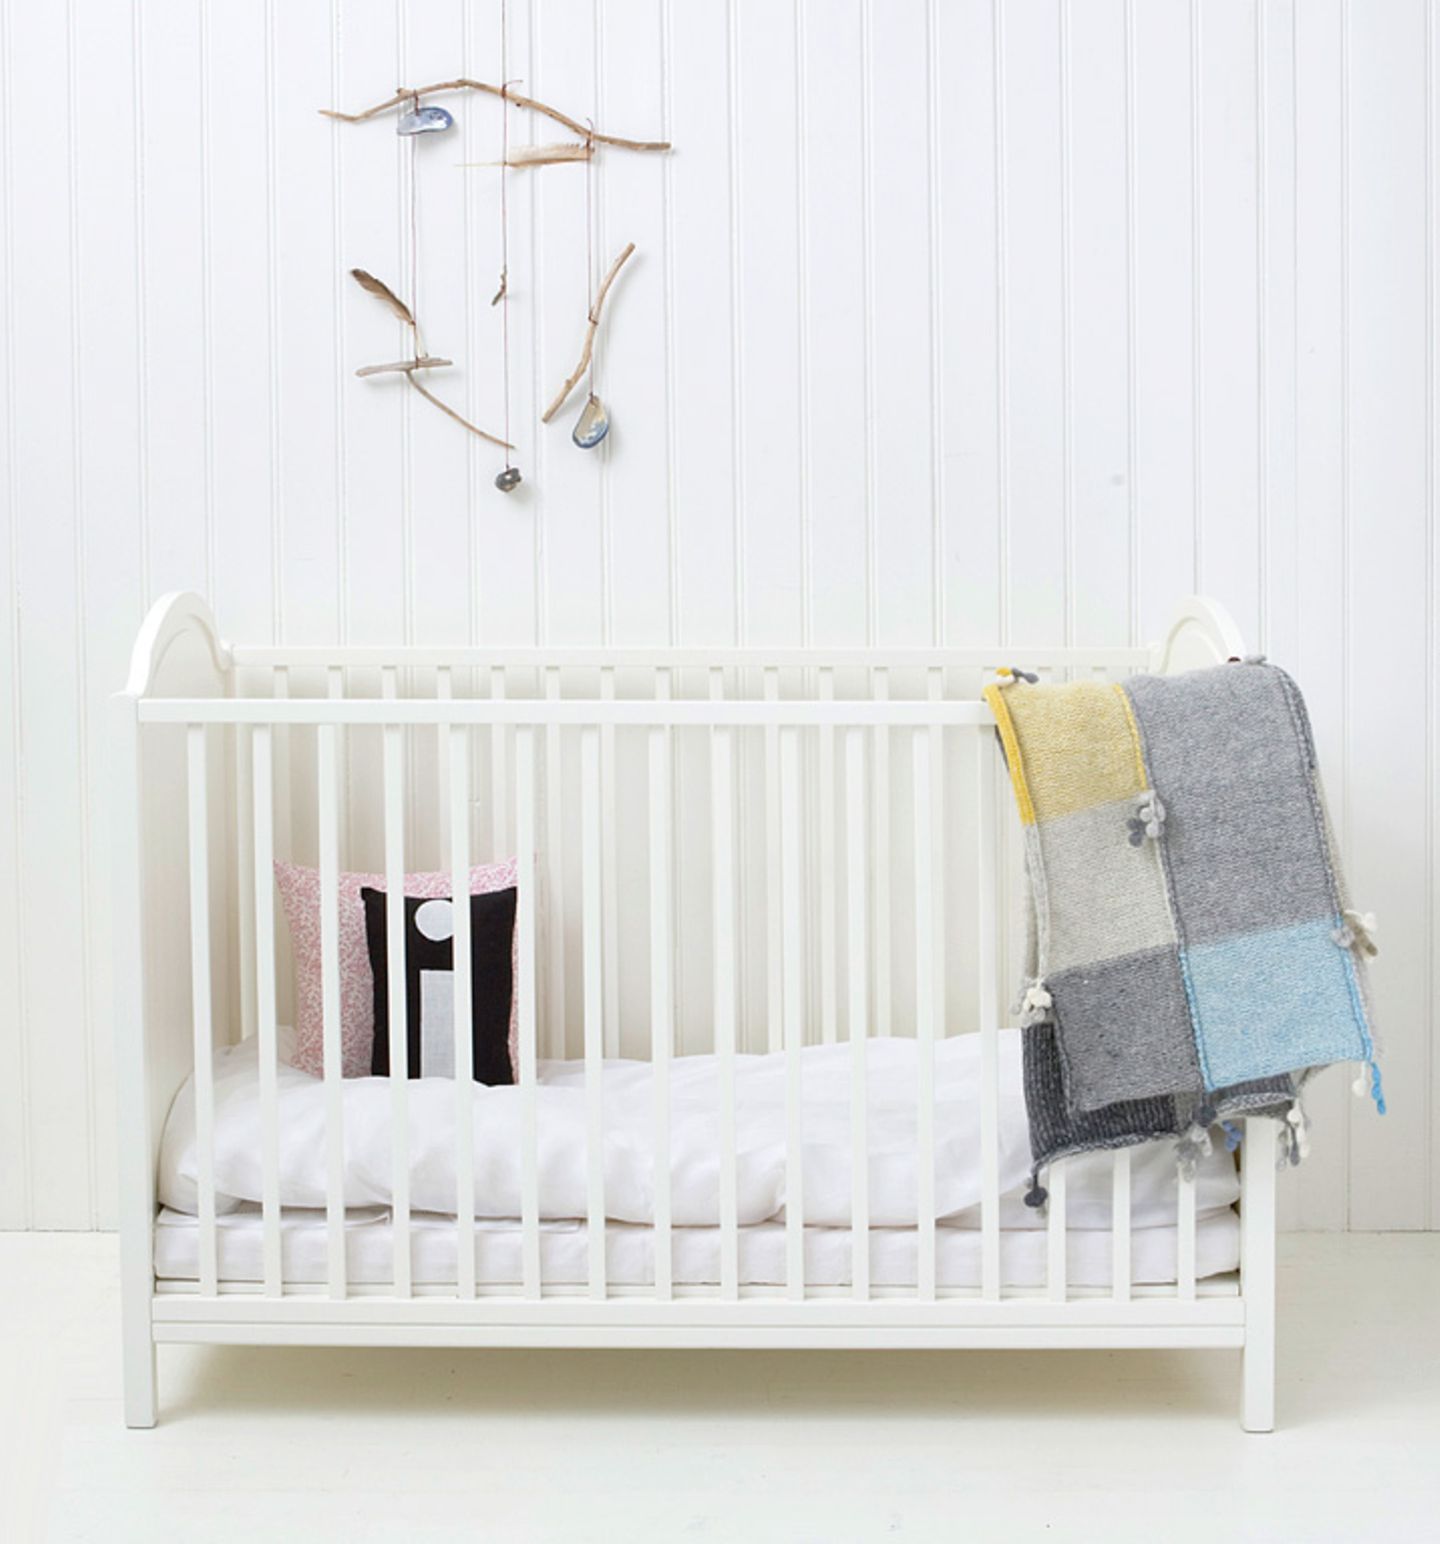 Kein Babyzimmer ohne Babybett. Dieses ist der Klassiker vom dänischen Hersteller Oliver Furniture.